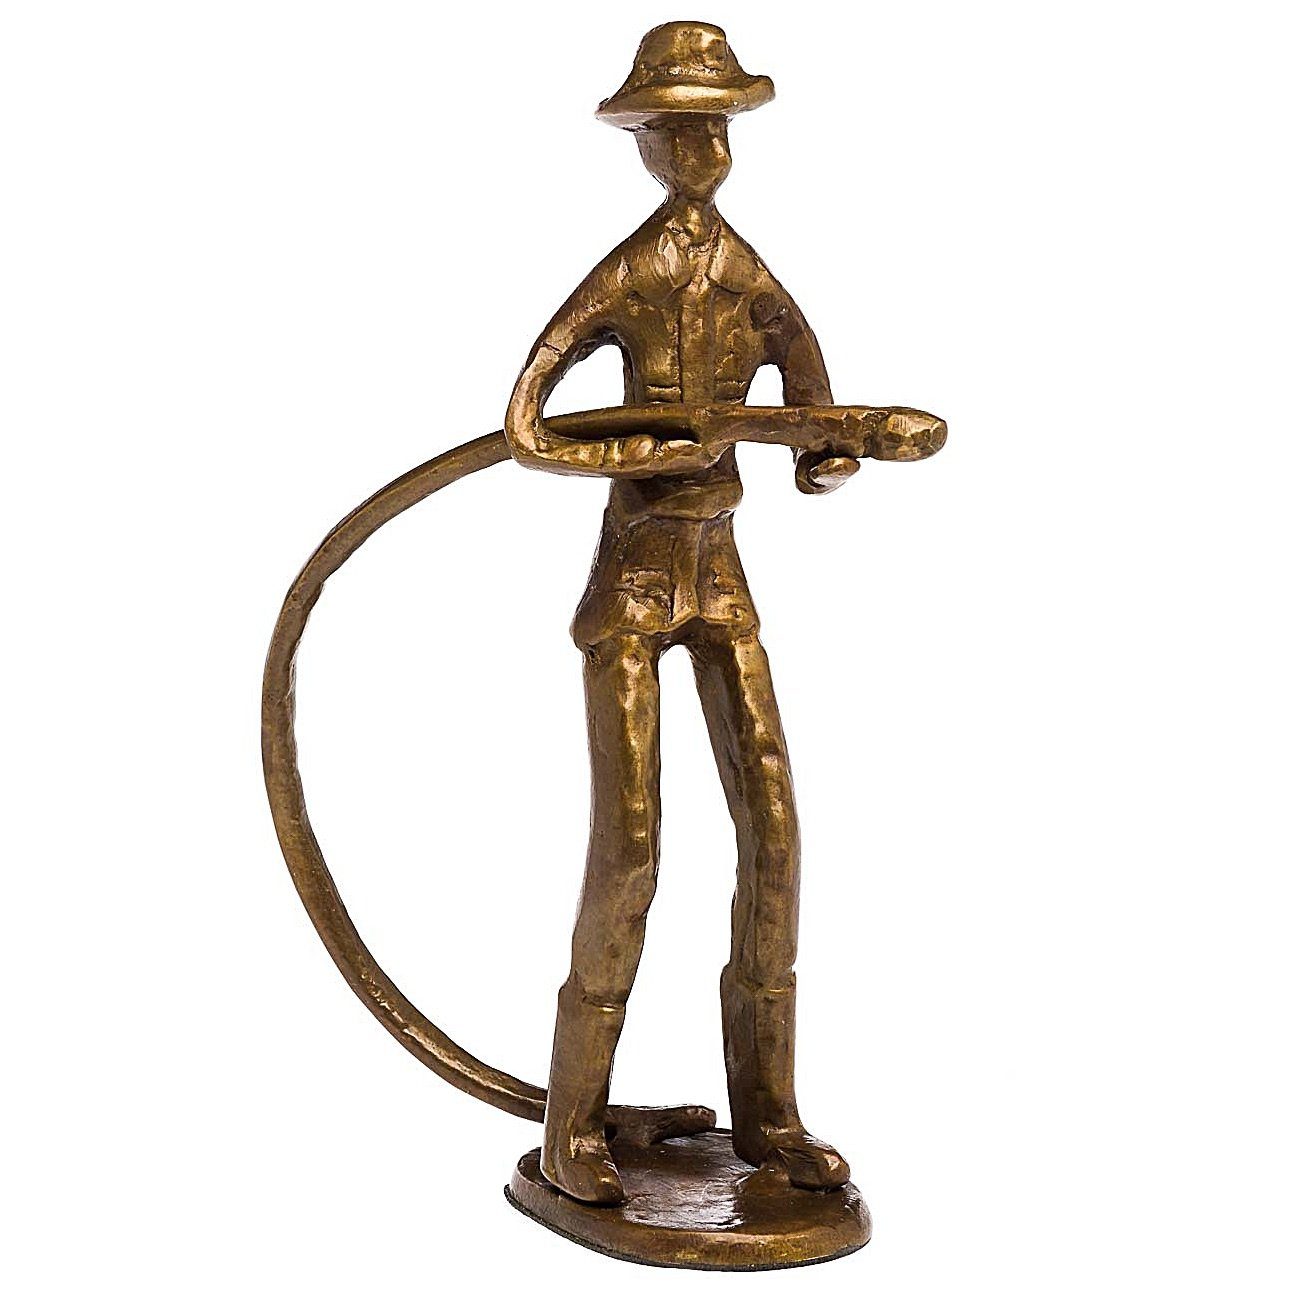 Feuerwehrmann Skulptur Bronze Antik-Stil Kunst Moderne Figur Aubaho Skulptur Feuerwehr